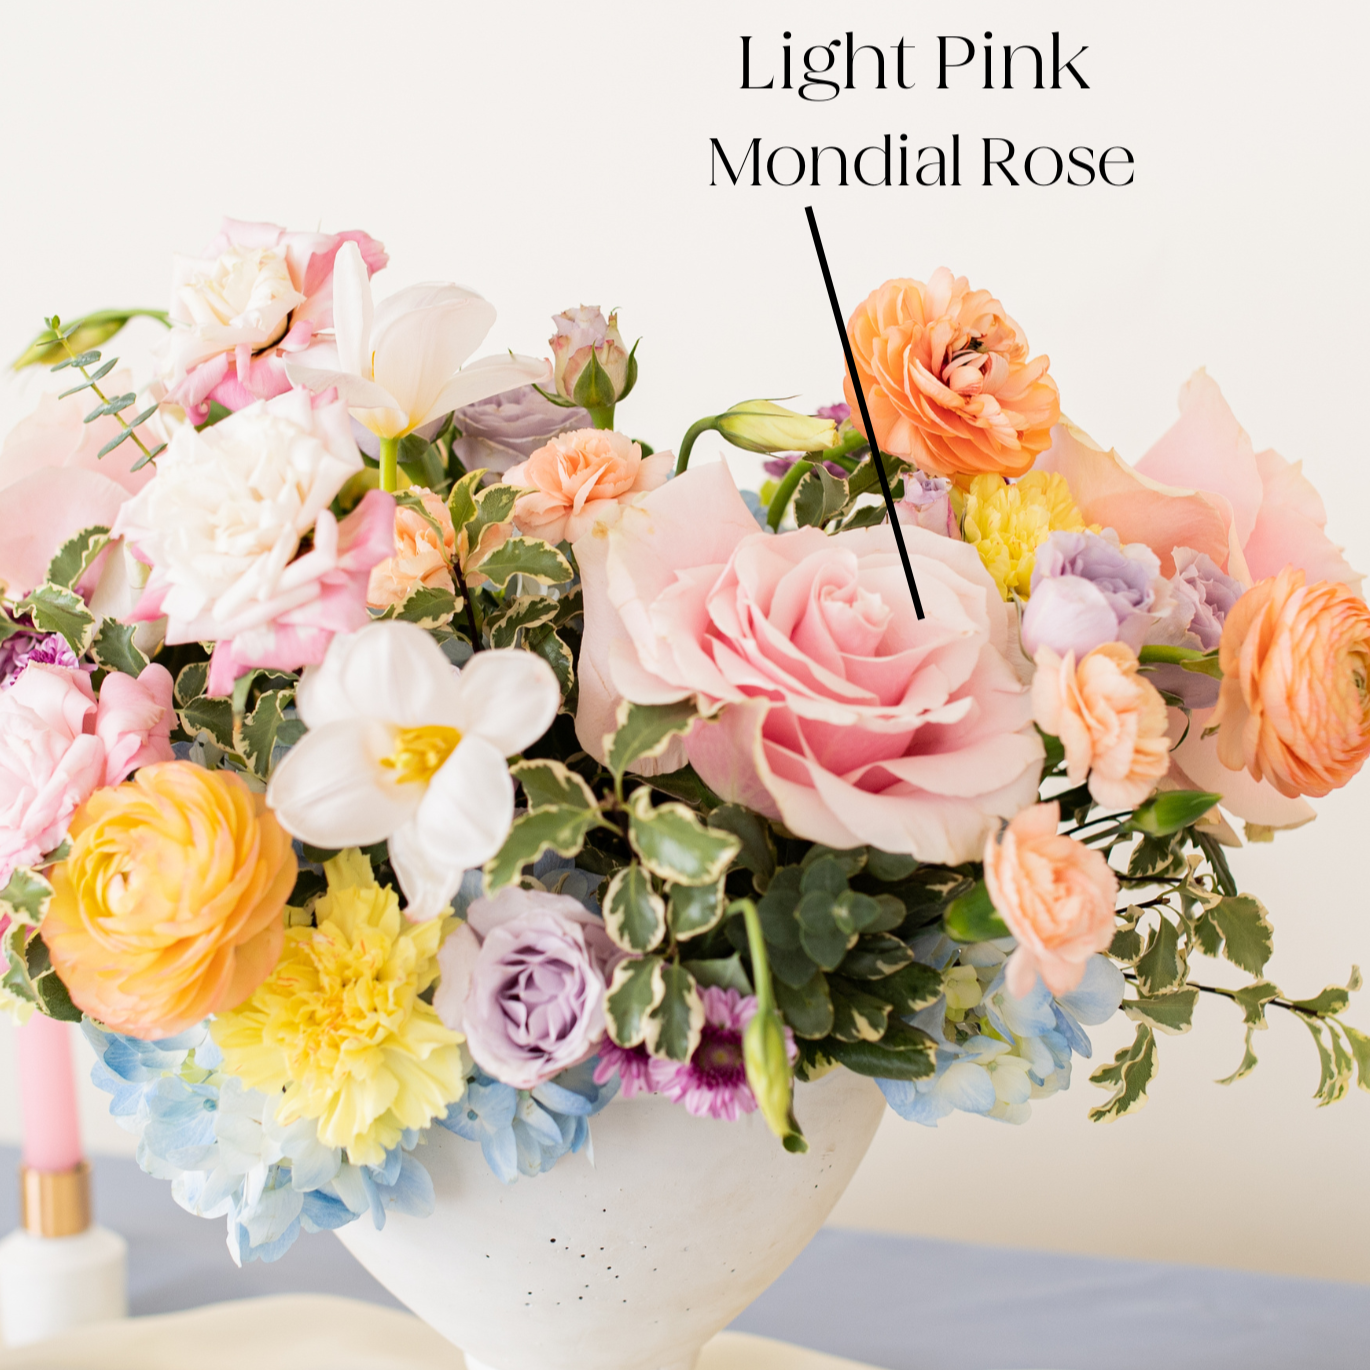 Light Pink Mondial Rose, centerpiece arrangement